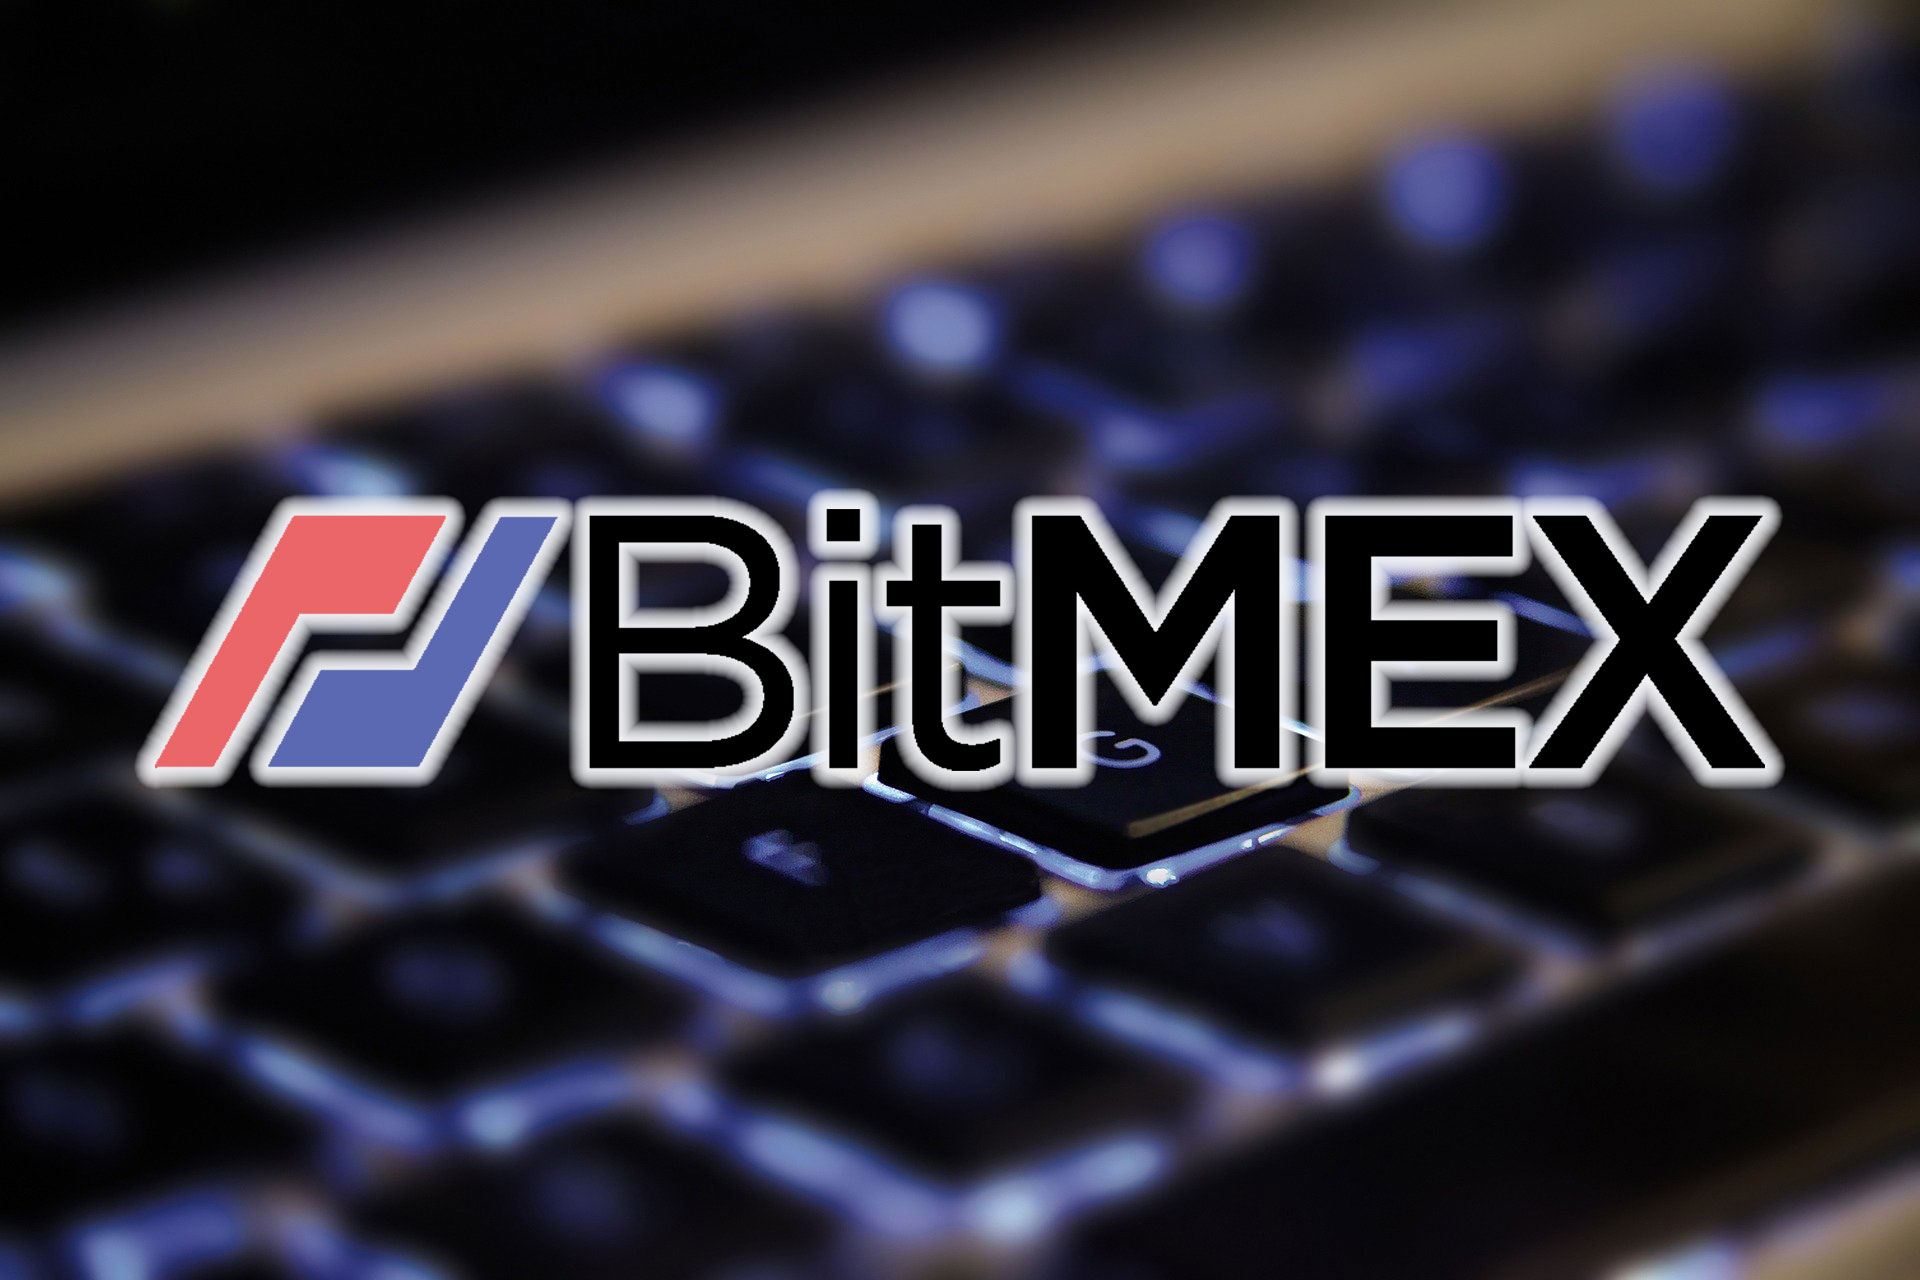 BitMEXの親会社が、オープンソース開発者助成プログラムの受付を開始